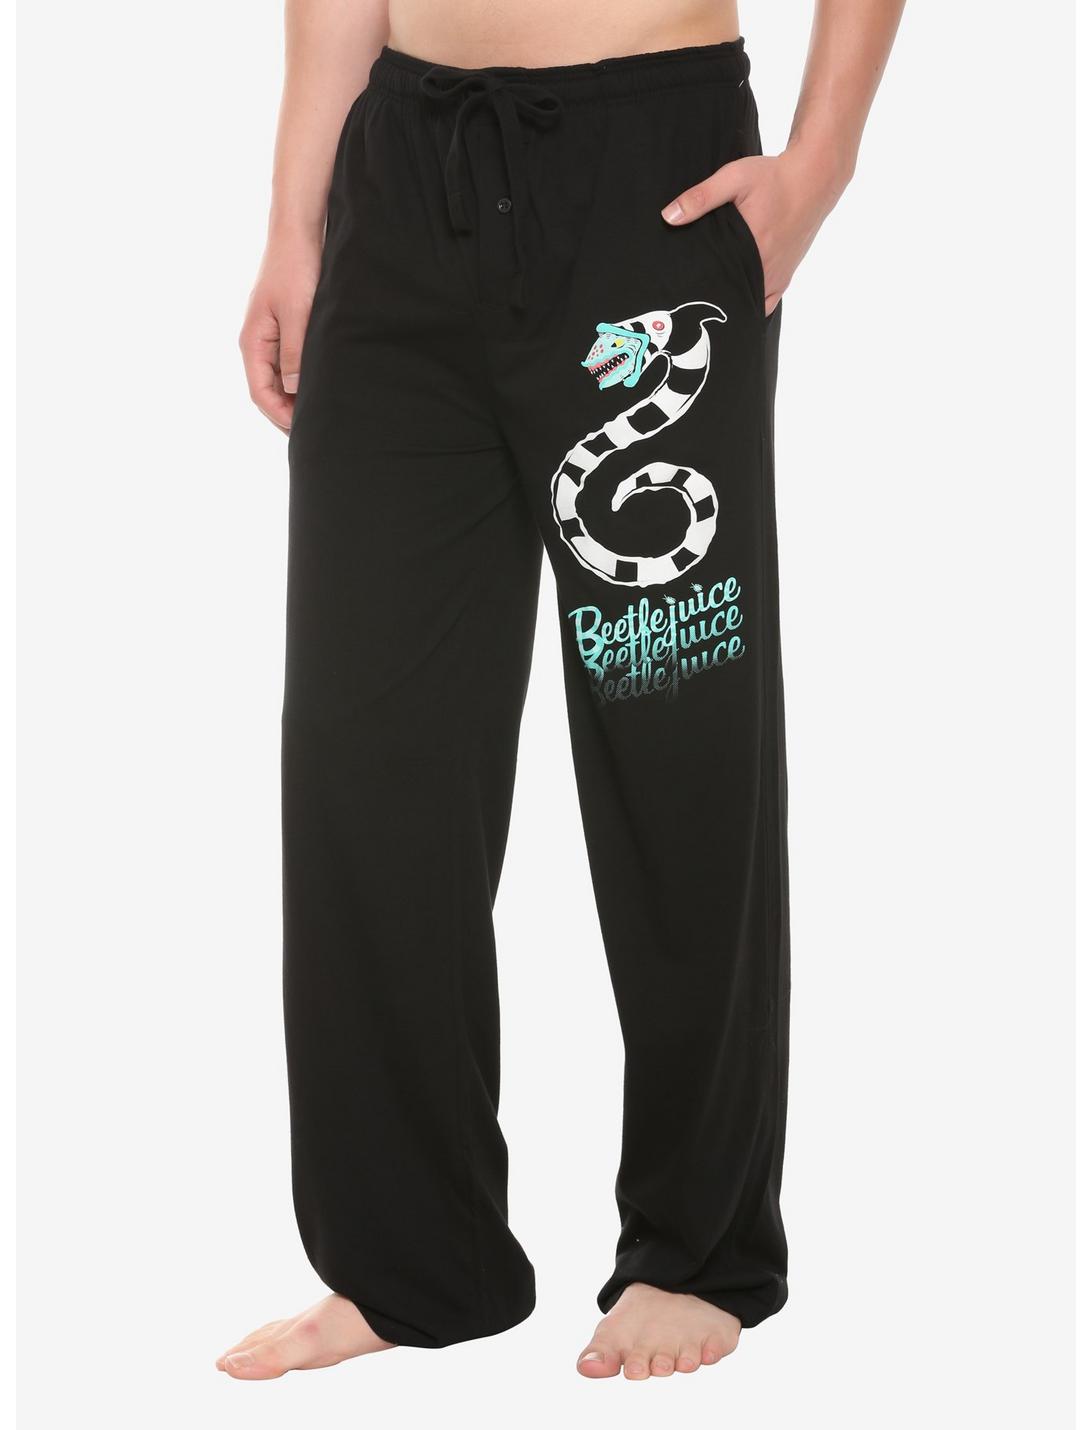 Beetlejuice Sandworm Pajama Pants, MULTI, hi-res